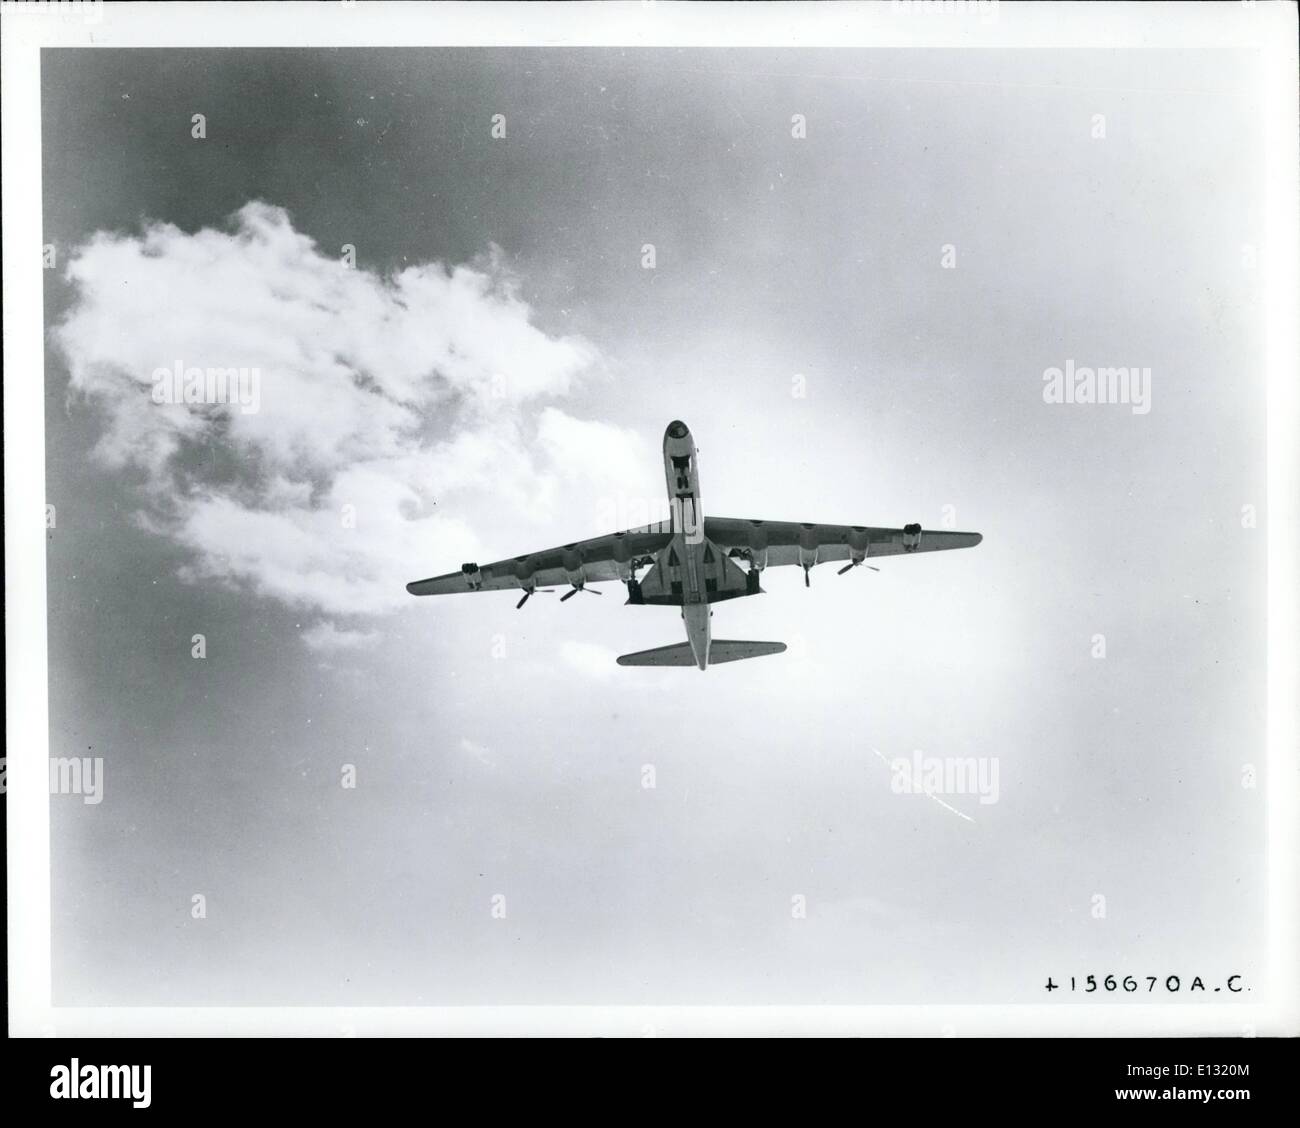 26. Februar 2012 - erfolgte A.C. weltweit schnellste Bomber unter dem Bauch des weltweit größten Bomber heute in einem der ungewöhnlichsten Luftverkehrsbetrieb in der Geschichte. Convair Abteilung der allgemeinen lebendige Corporation, Erbauer der beiden Flugzeuge verwendet einen B-36 Bomber, um einen b-58 Überschall-Bomber aus Fort Worth, Texas, nach Dayton, Ohio zu schleppen. Die Delta-winged b-58 abzüglich seiner vier Düsentriebwerke und anderen Geräten wurde teilweise in die B-36 Bombenschacht für den nonstop-Flug nach Wright-Patterson Air Force Base versteckt. Stockfoto